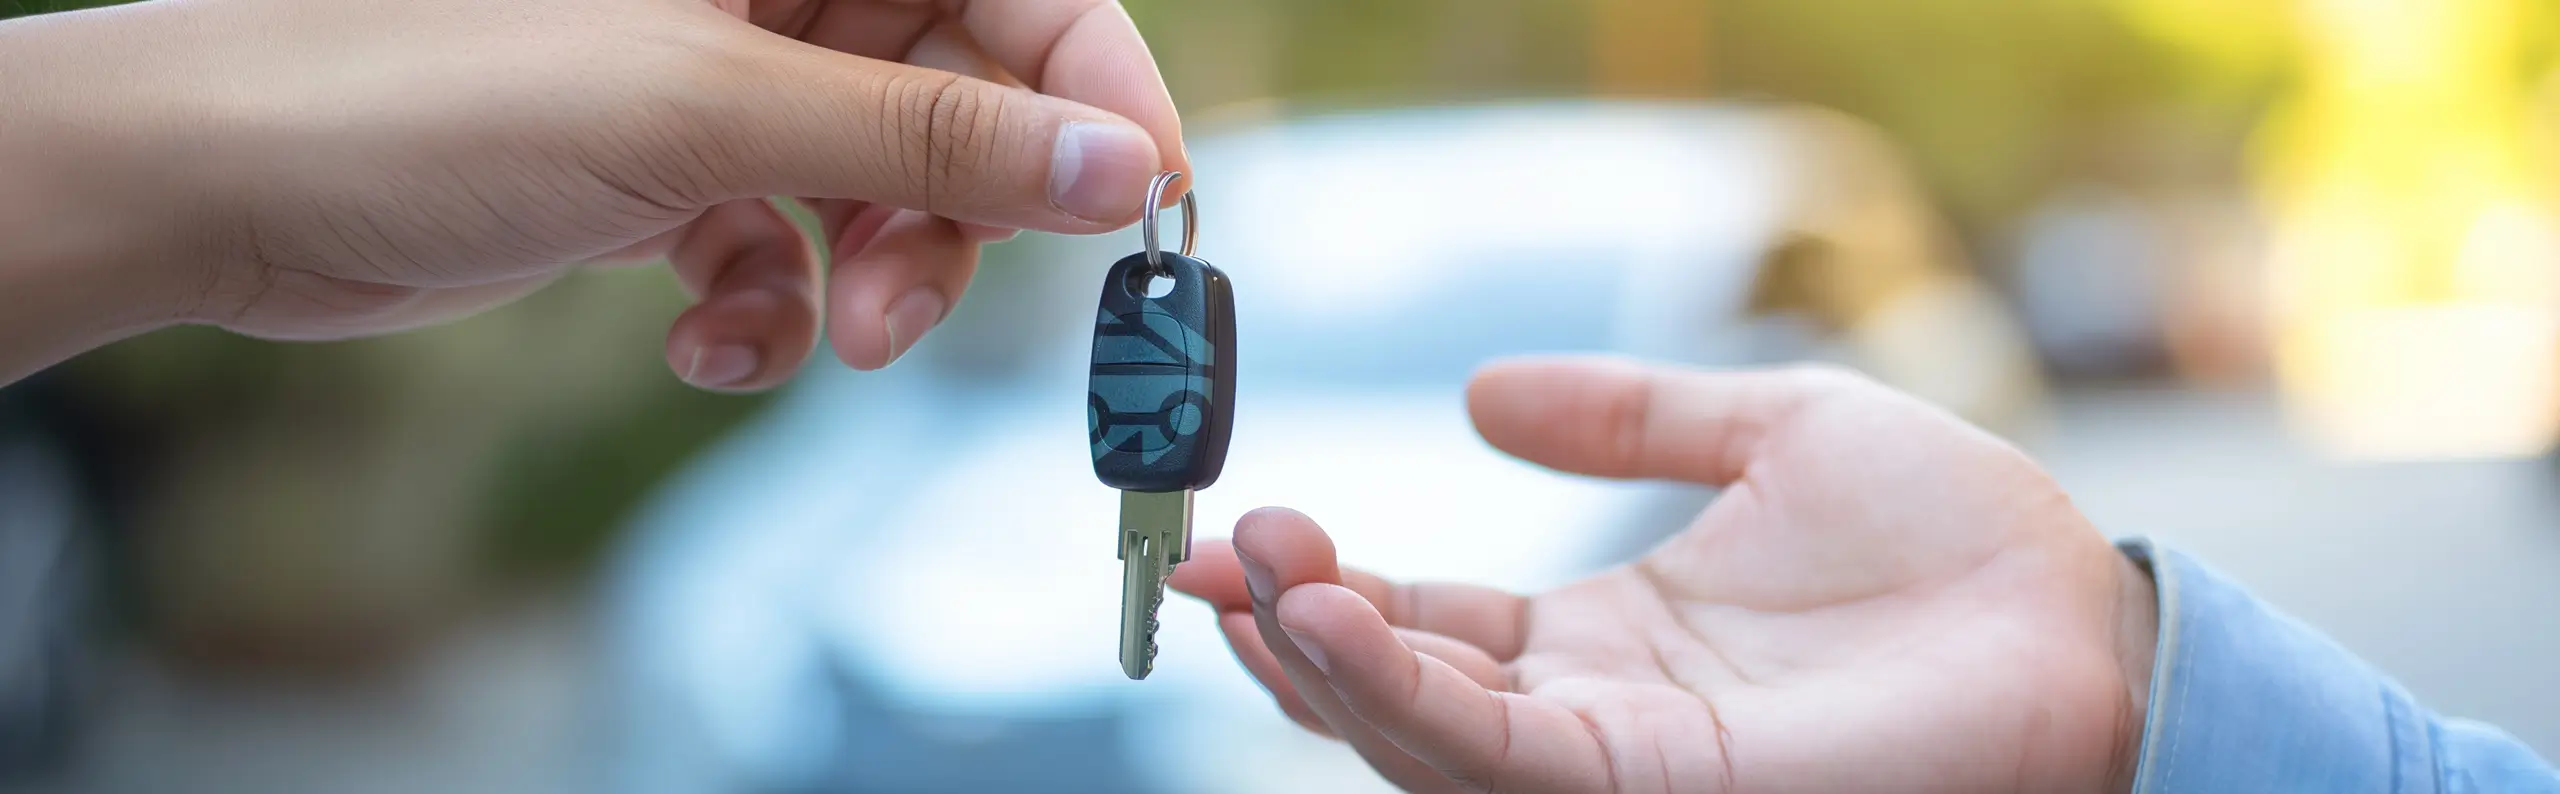 Redo att Sälja bilen snabbt och lämna över bil nycklarna? Två händer som möts och bilnycklar som lämnas över en solig dag i Sverige.